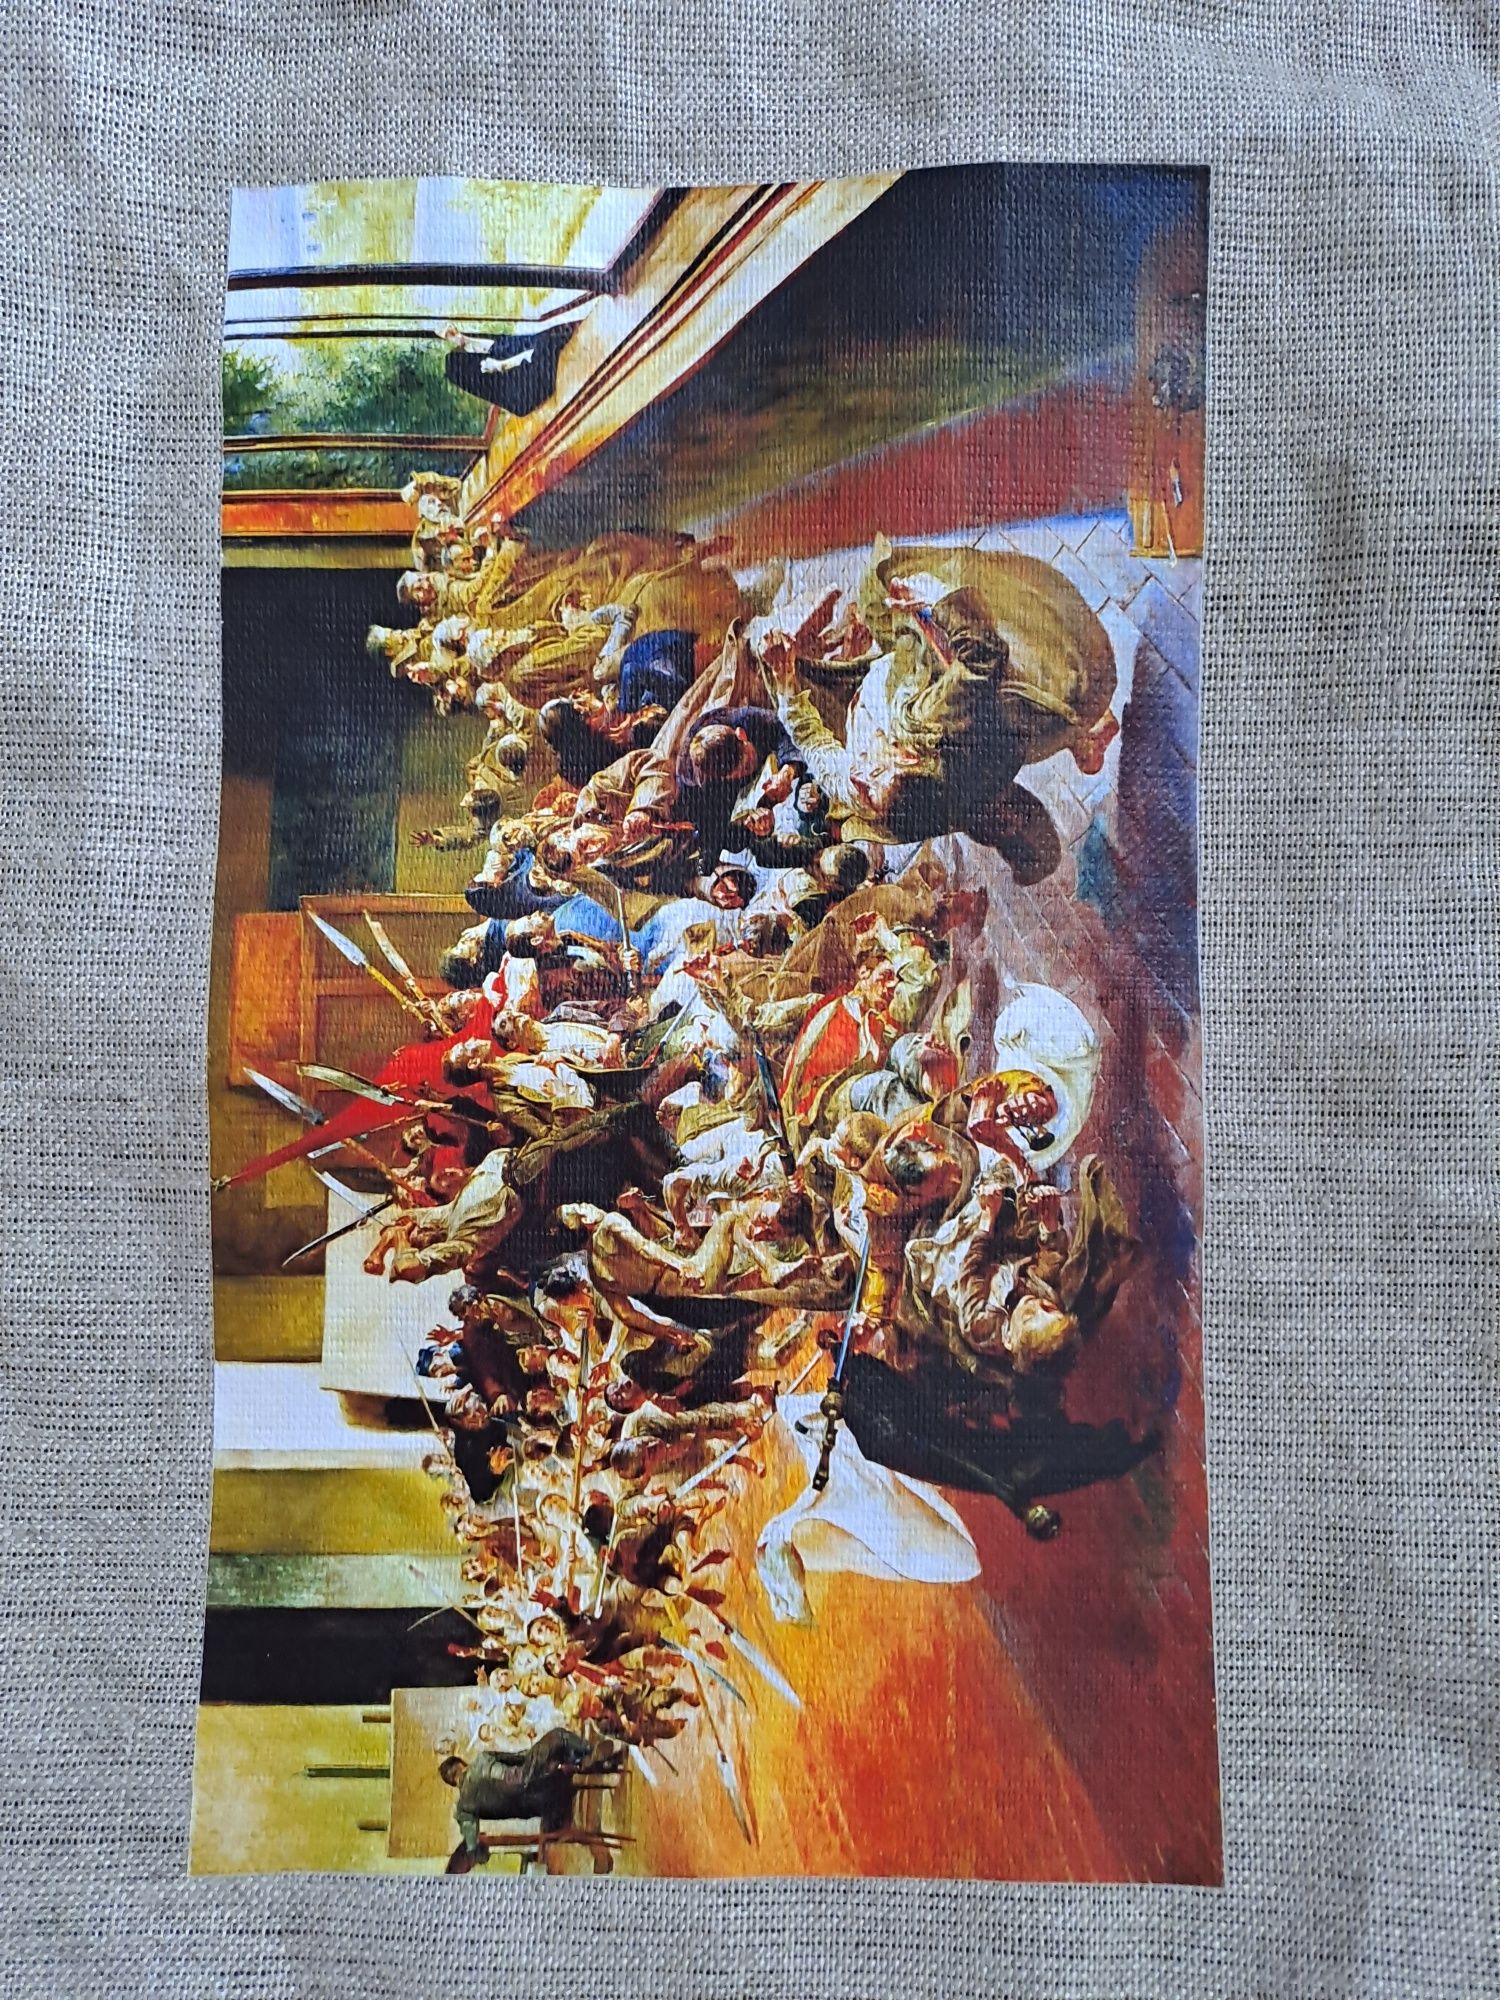 Torba lniana z obrazem Jacka Malczewskiego